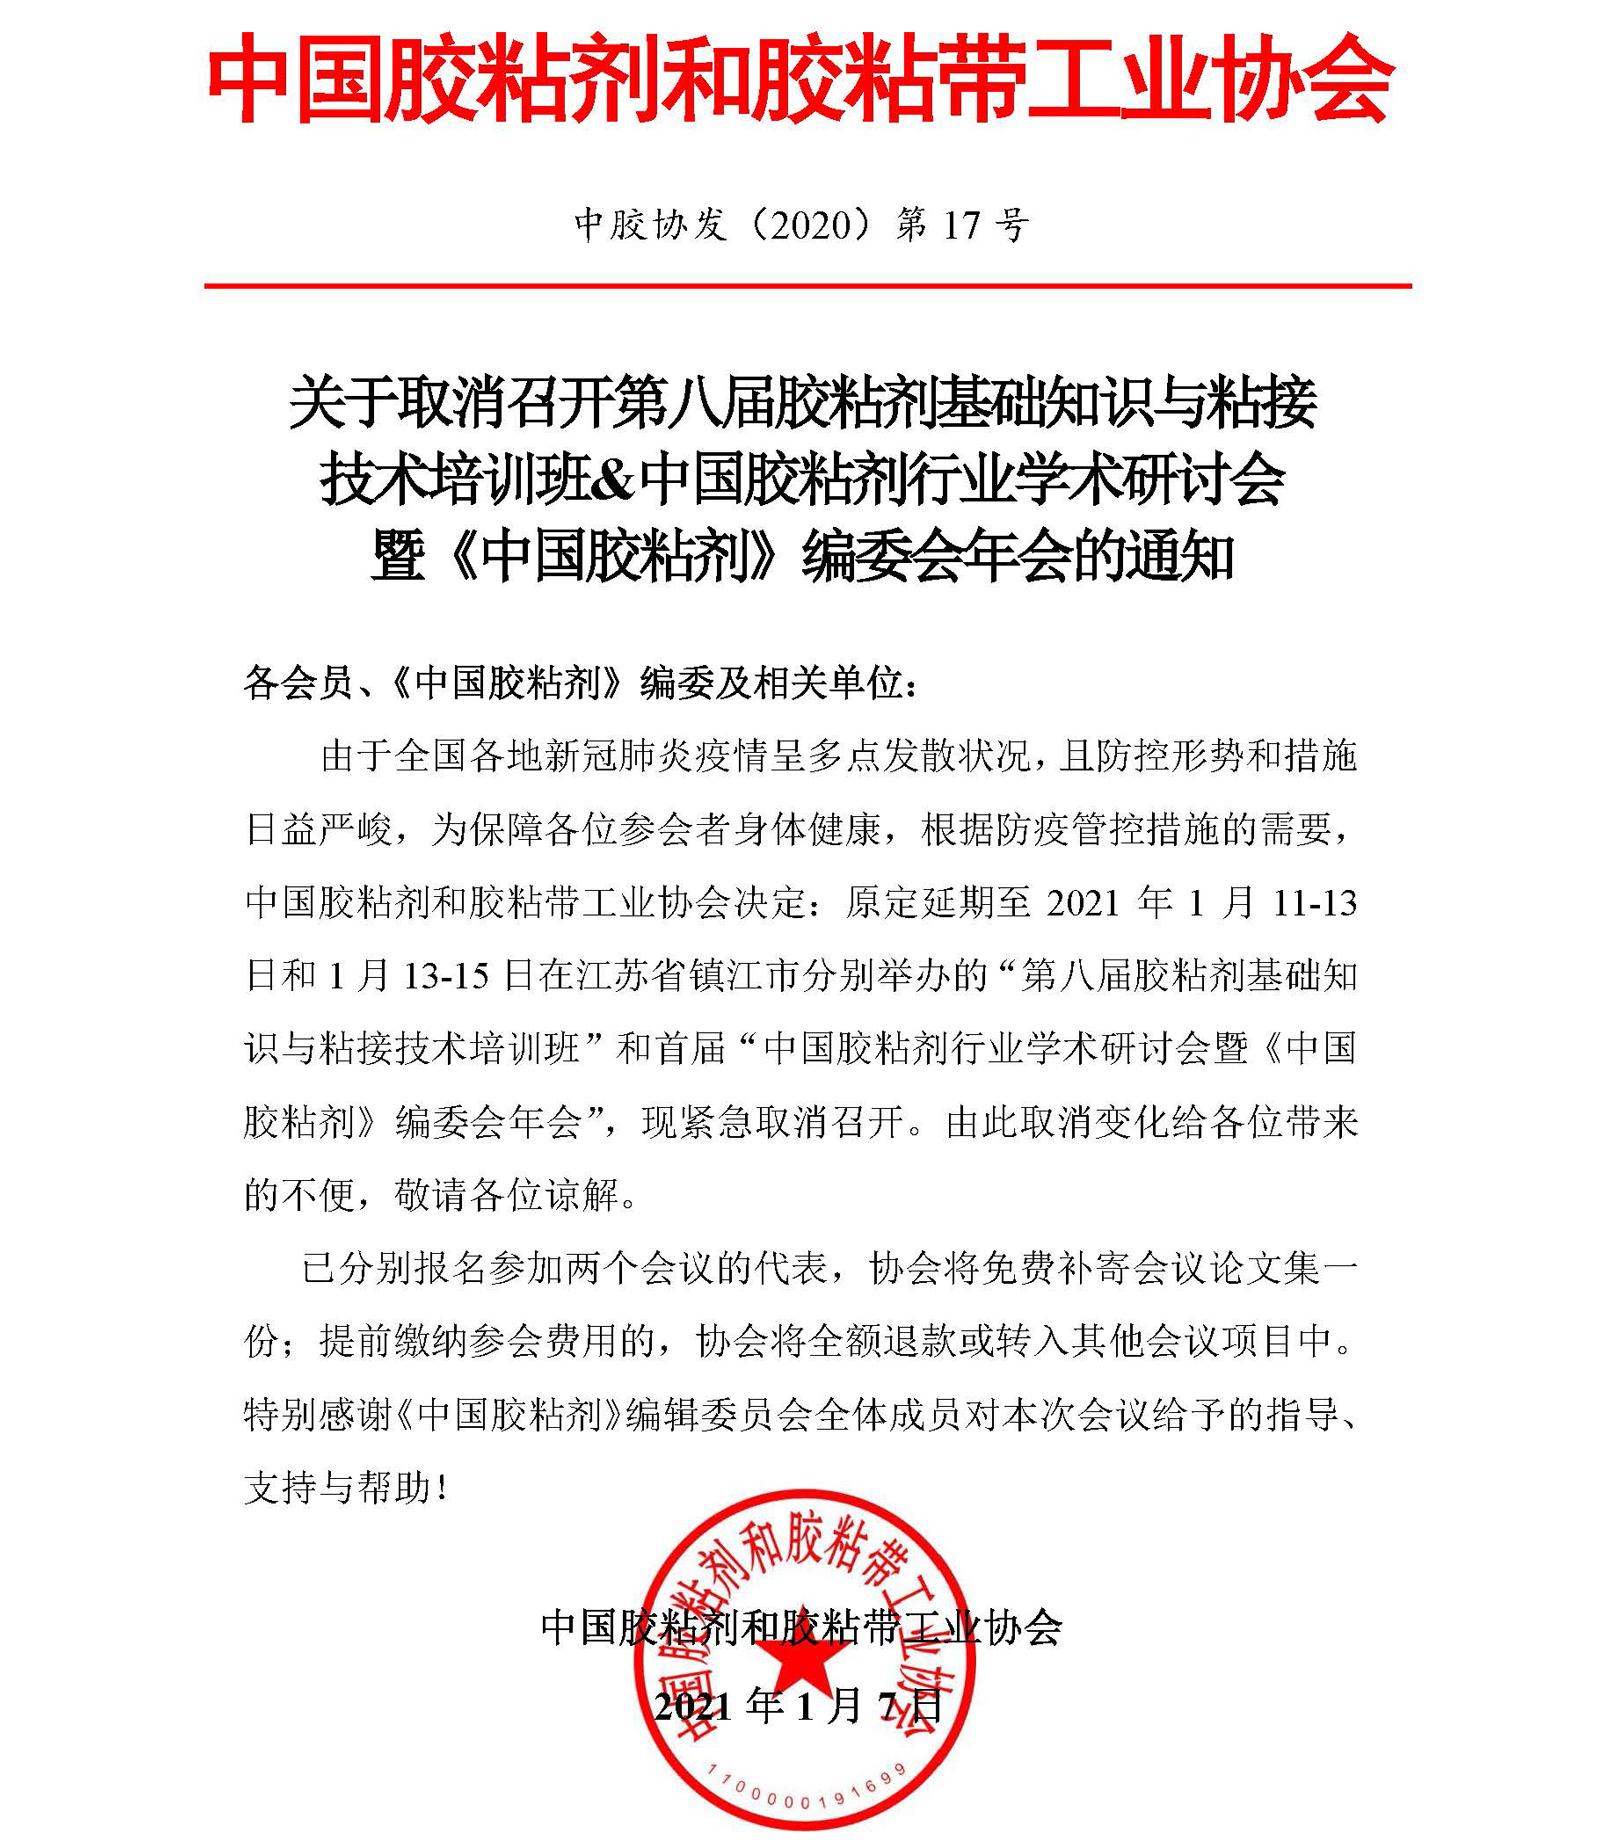 中国胶粘剂行业学术周会议取消召开的通知.jpg